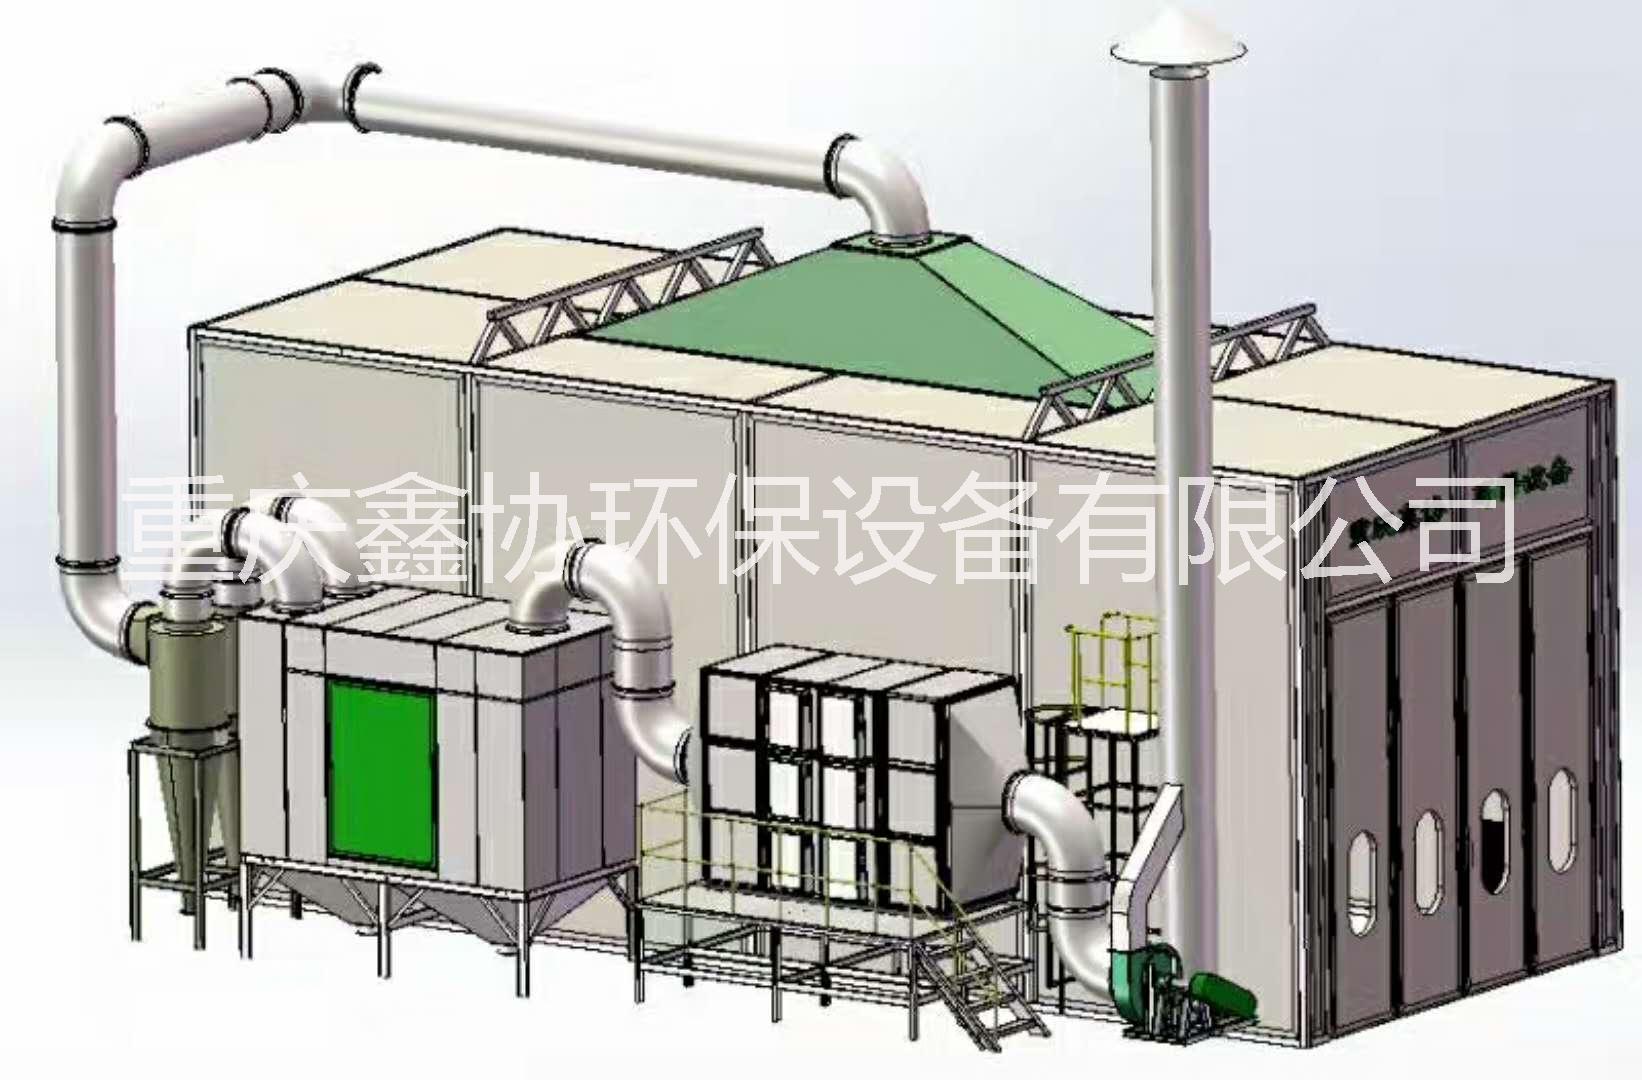 重庆市烟雾净化器/重庆鑫协环保设备制造厂家